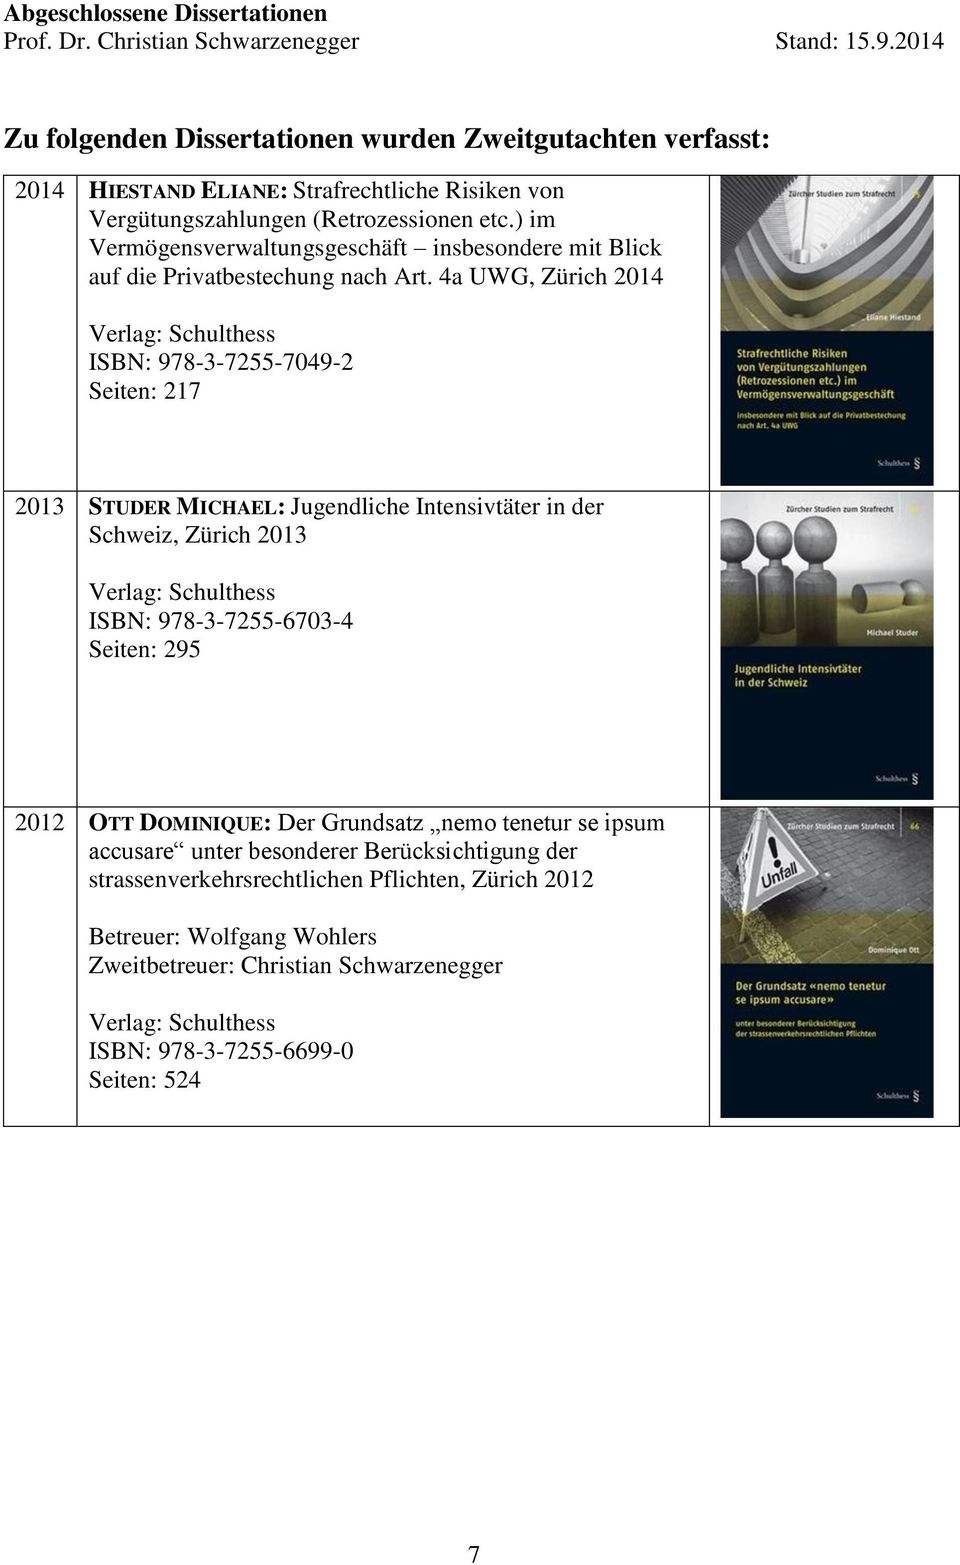 4a UWG, Zürich 2014 ISBN: 978-3-7255-7049-2 Seiten: 217 2013 STUDER MICHAEL: Jugendliche Intensivtäter in der Schweiz, Zürich 2013 ISBN: 978-3-7255-6703-4 Seiten: 295